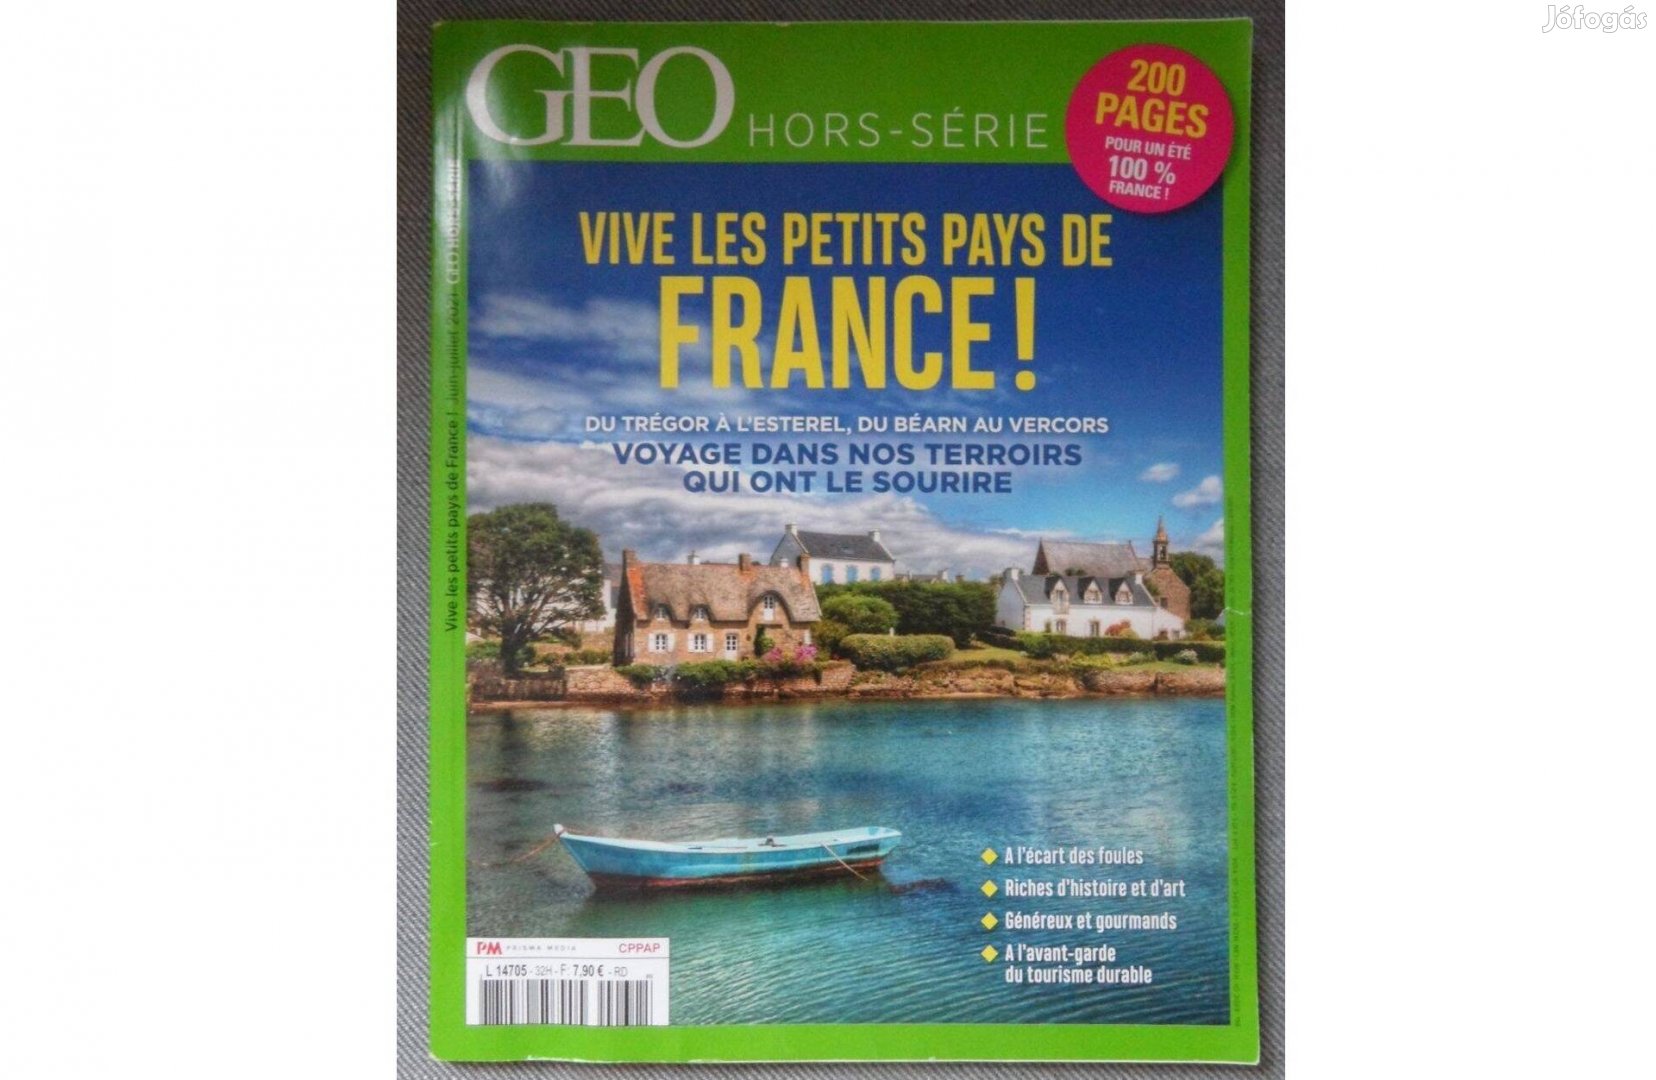 GEO magazin különkiadás (francia nyelvű)